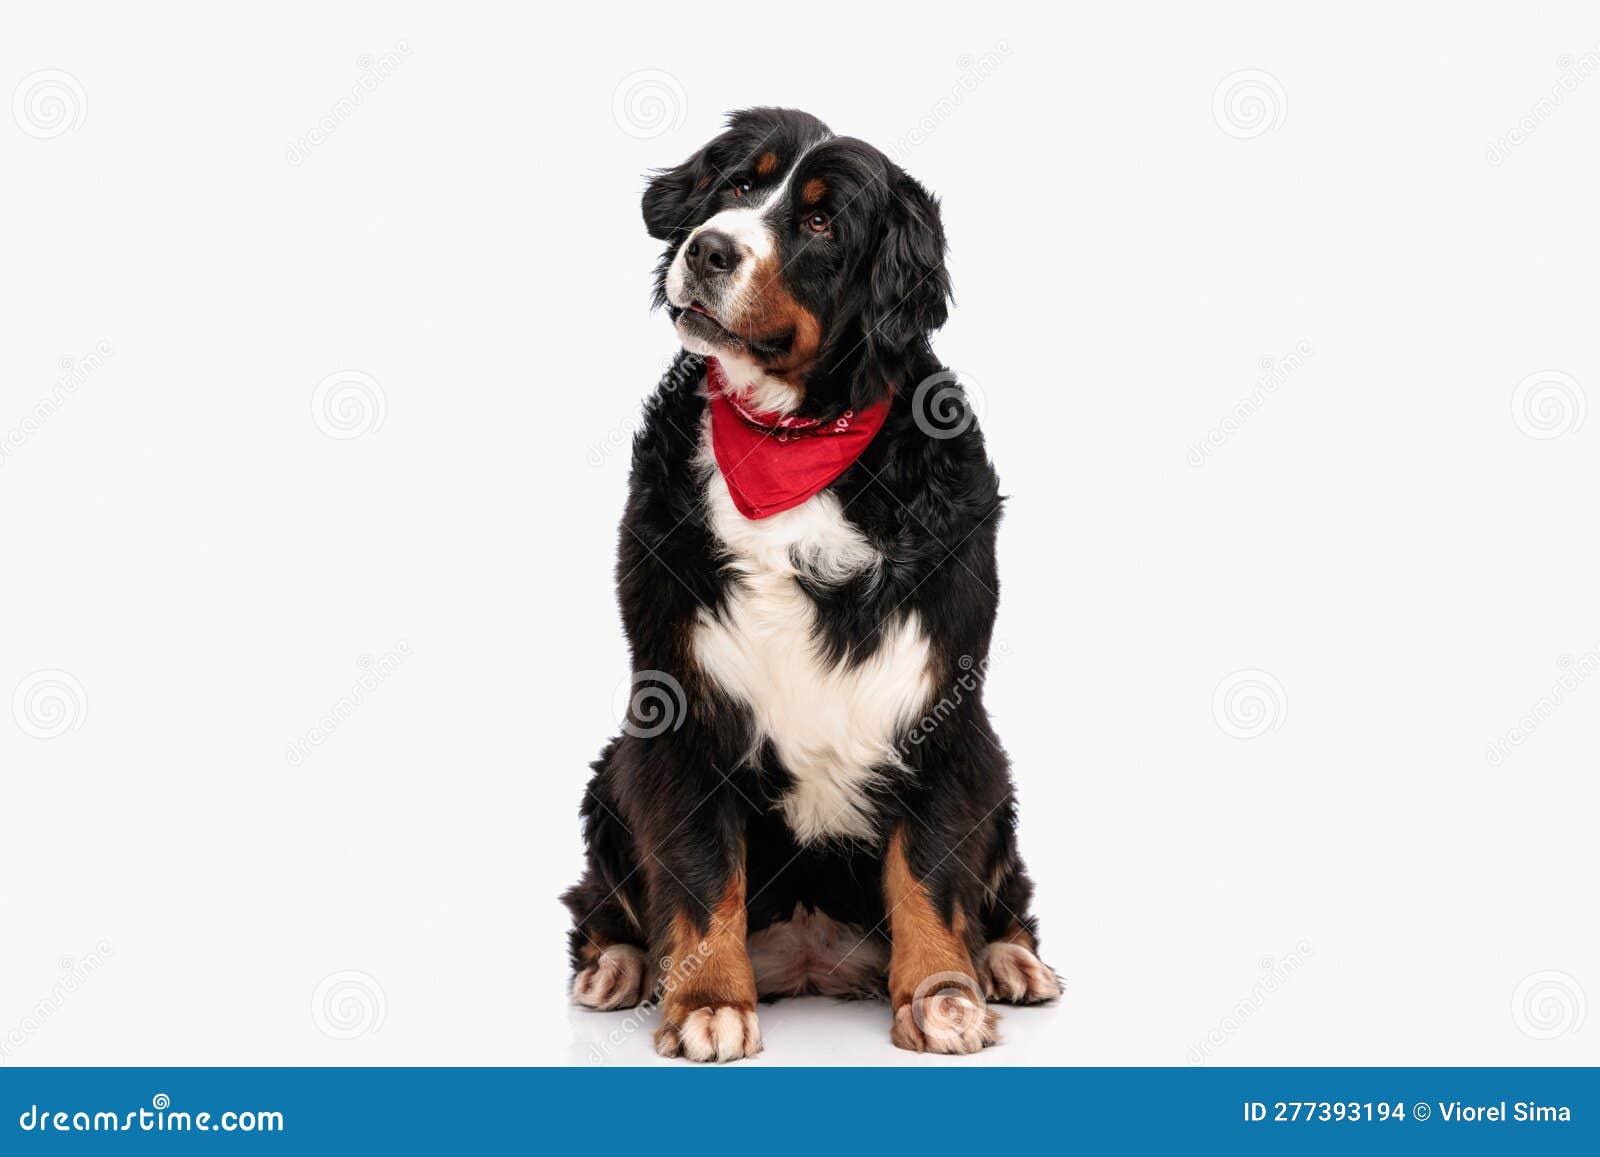 funny berna shepherd dog with red bandana looking away